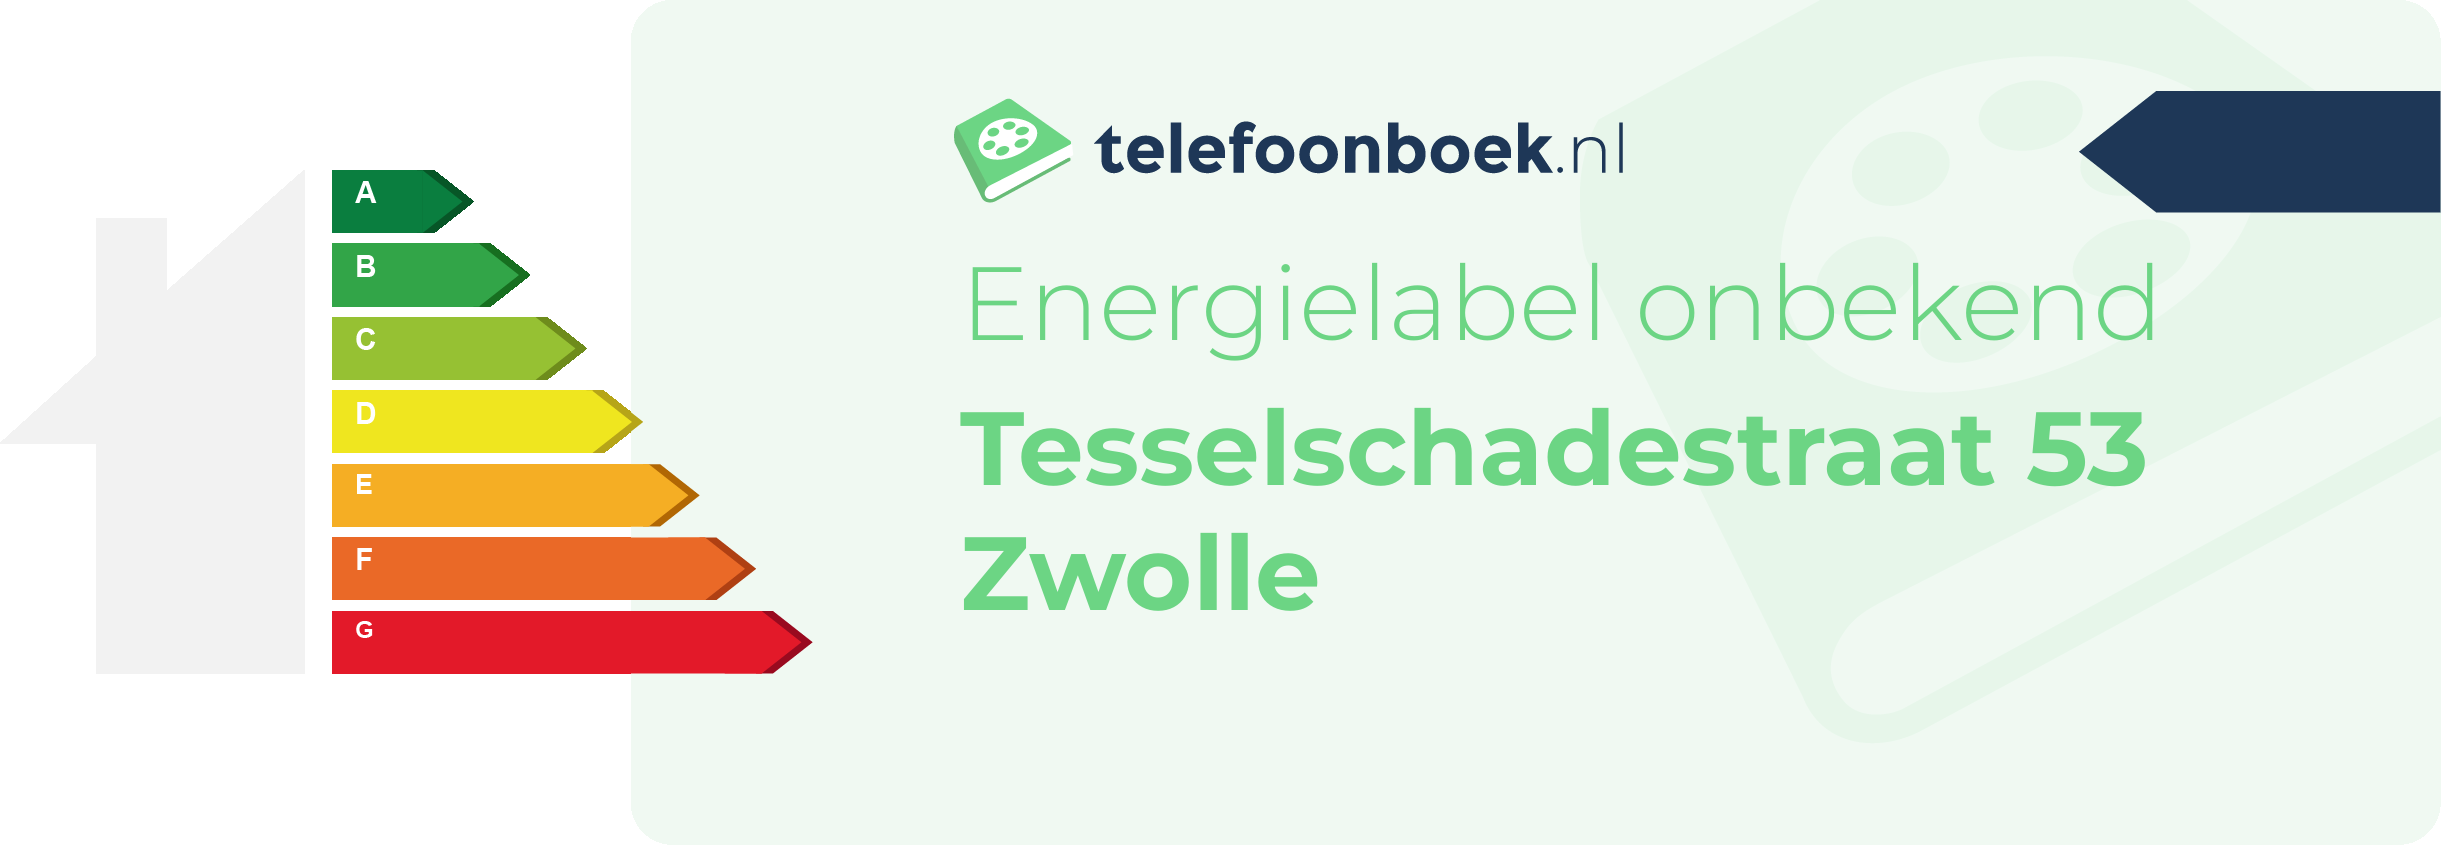 Energielabel Tesselschadestraat 53 Zwolle